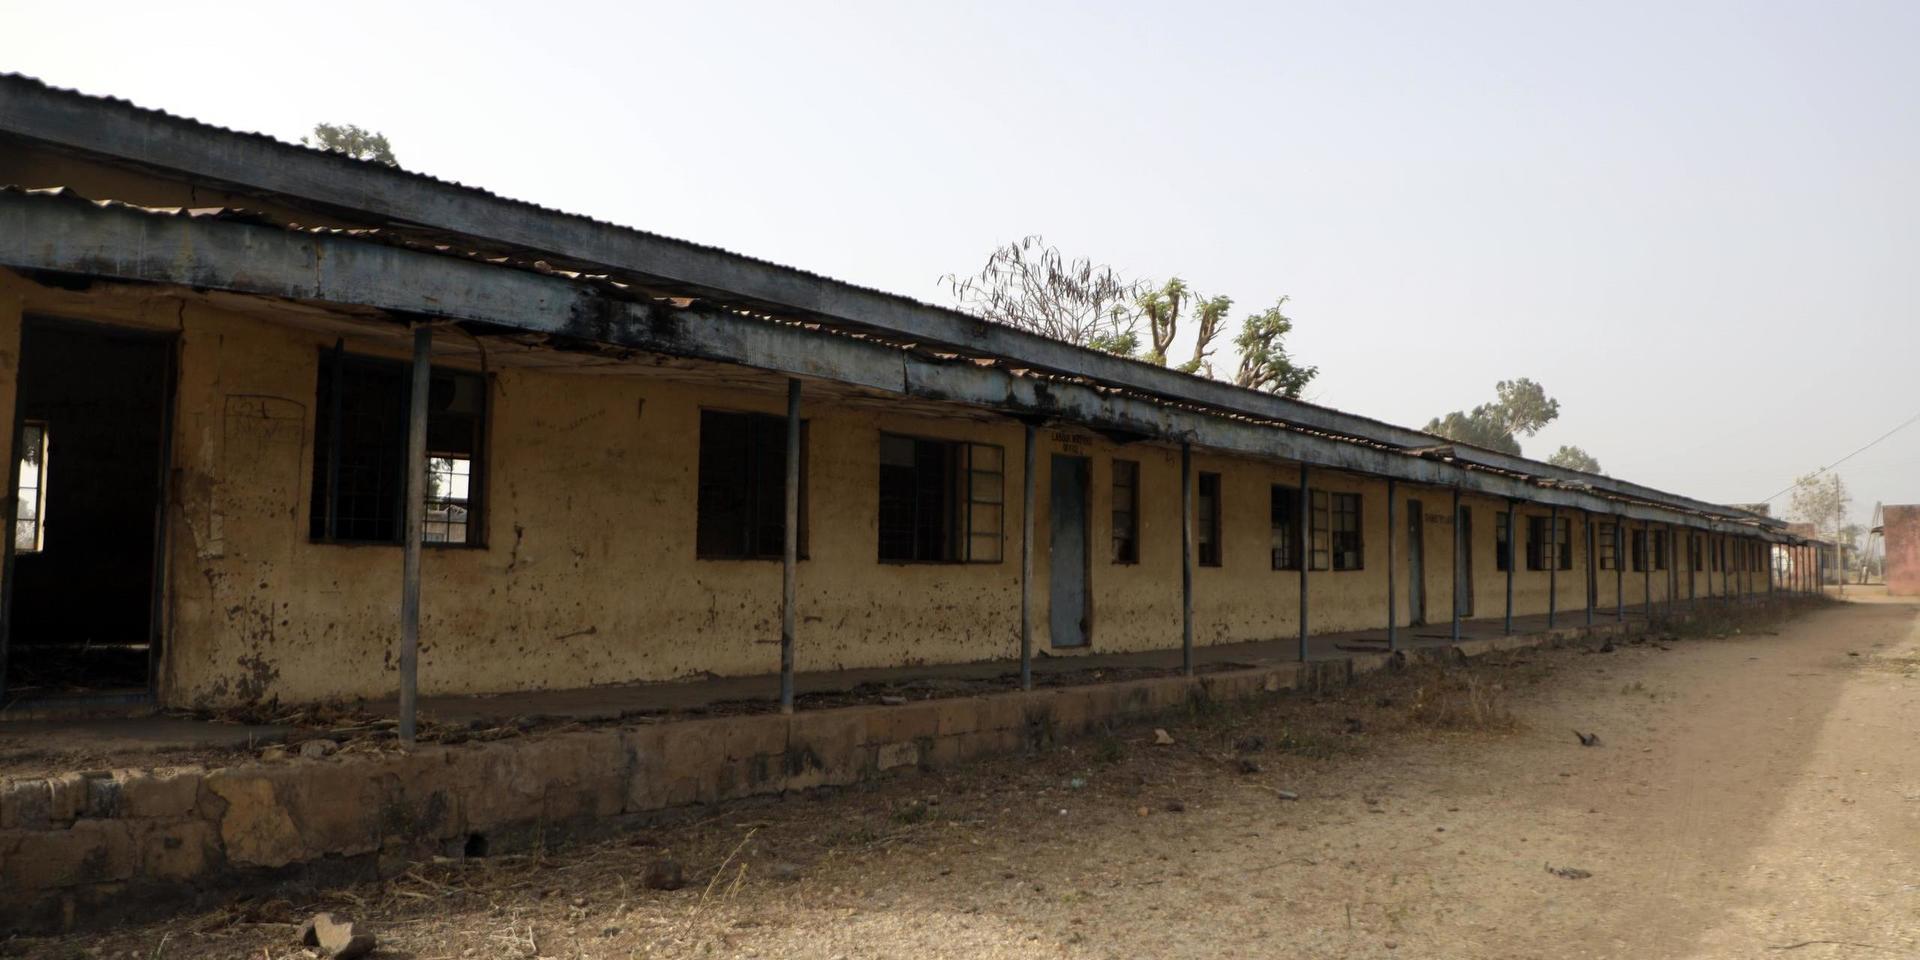 Den skola i Kagara i Nigeria, varifrån 42 personer i förra veckan fördes bort. Det har blivit vanligare att kriminella gäng genomför kidnappningar och kräver lösen i de nordvästra och centrala delarna i landet.